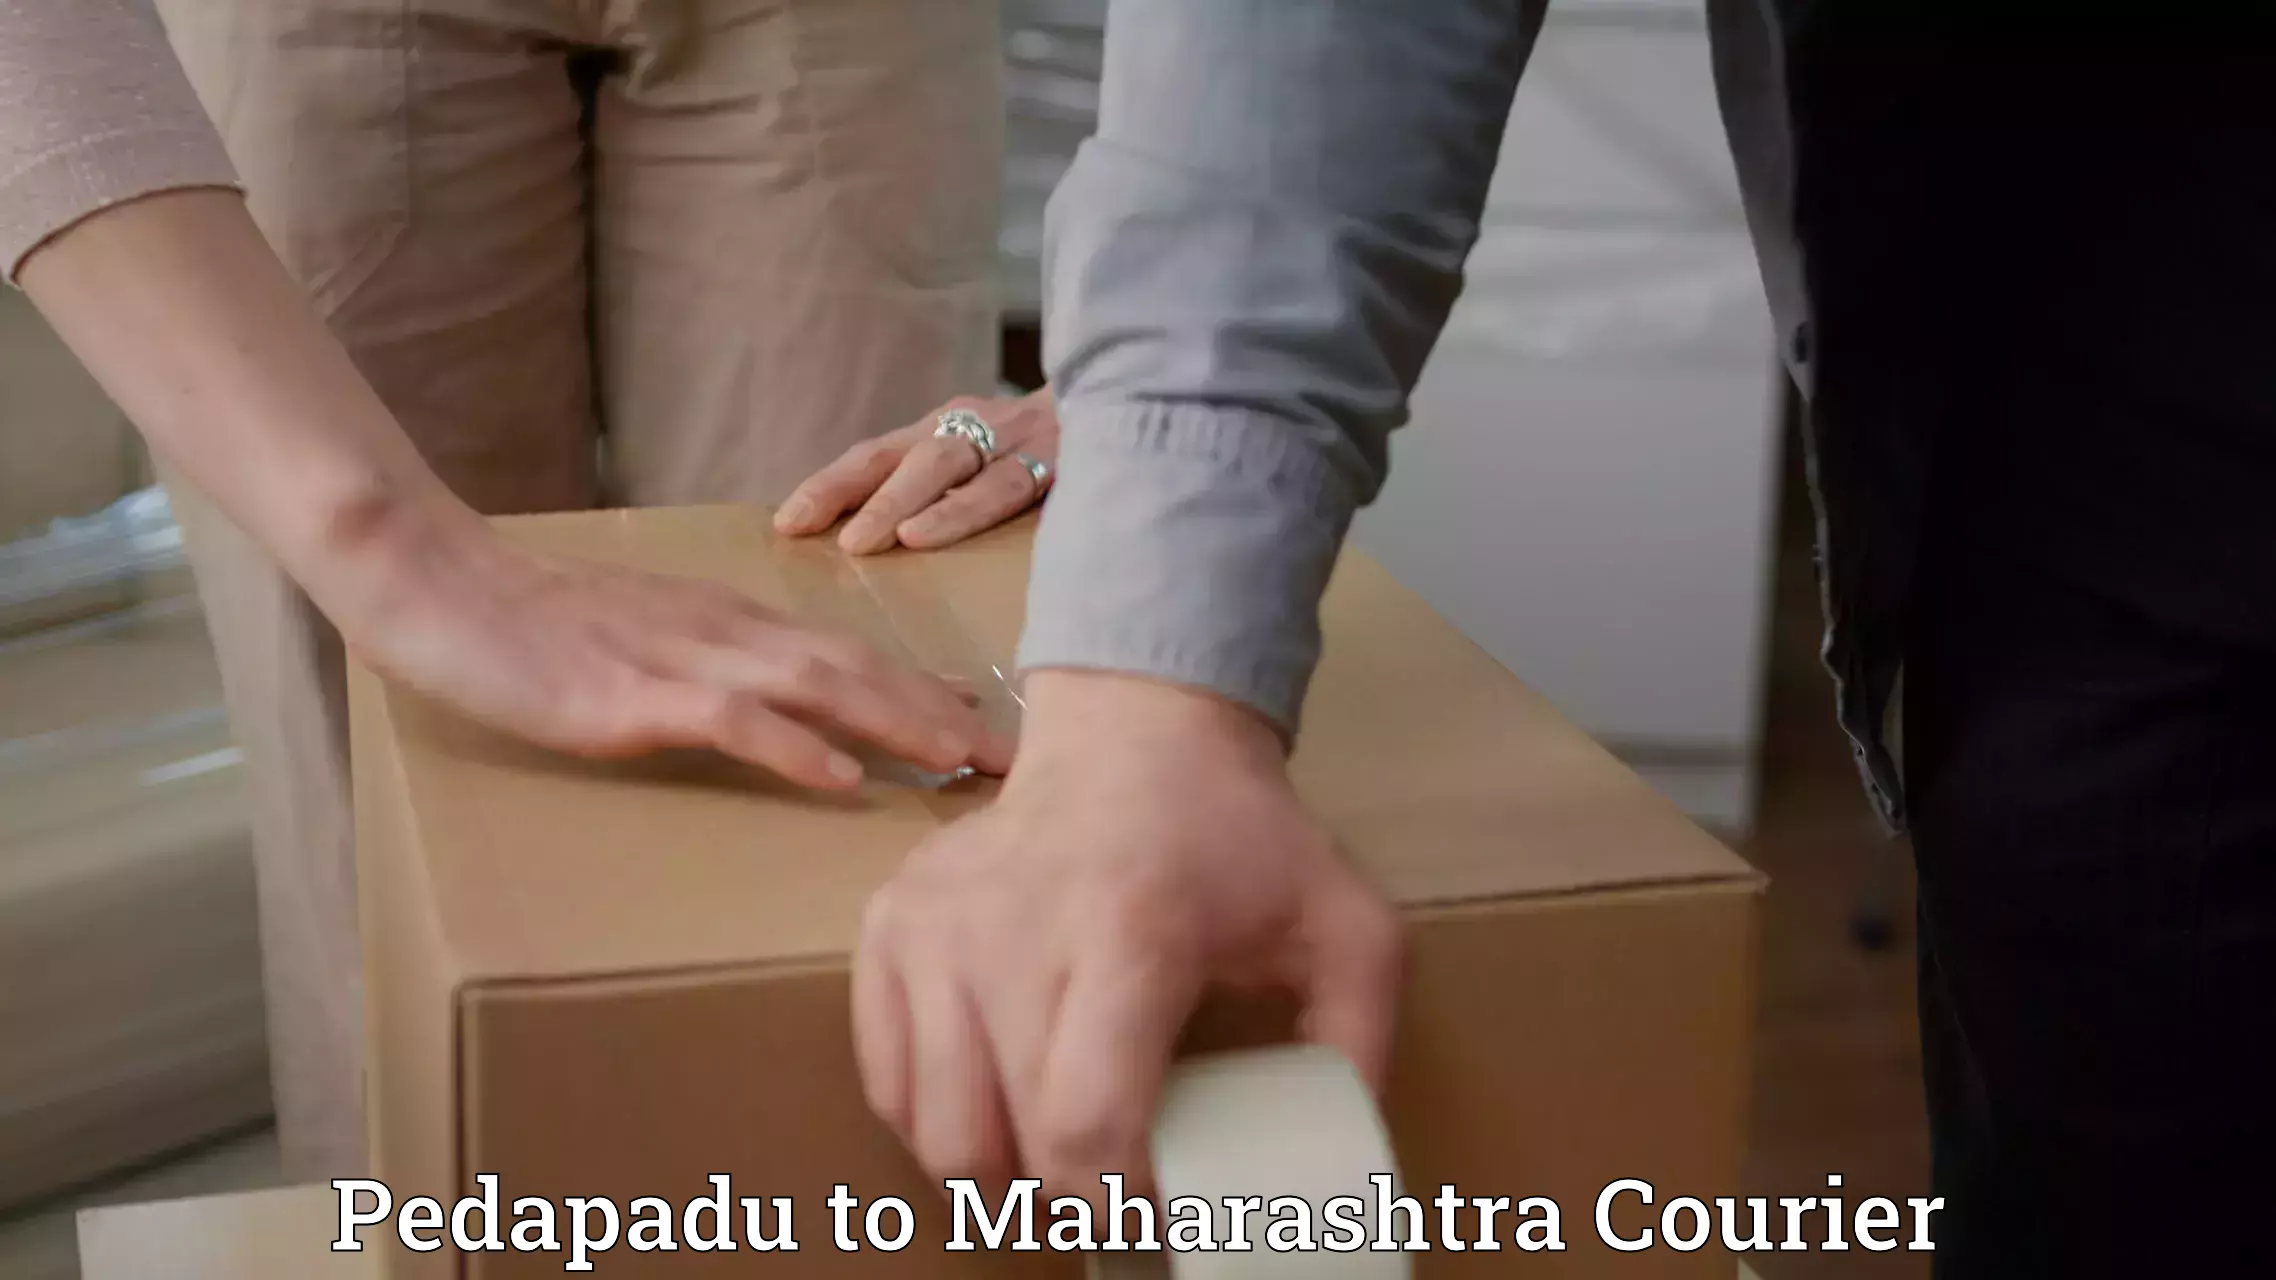 Expedited shipping methods Pedapadu to Maharashtra